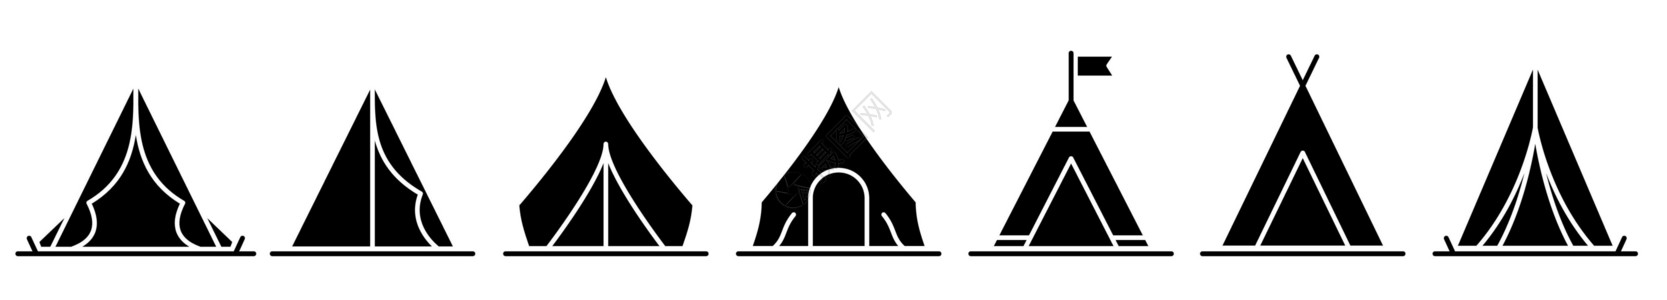 单塔帐篷帐篷图标 一组黑色的帐篷图标 露营或旅行图标插画